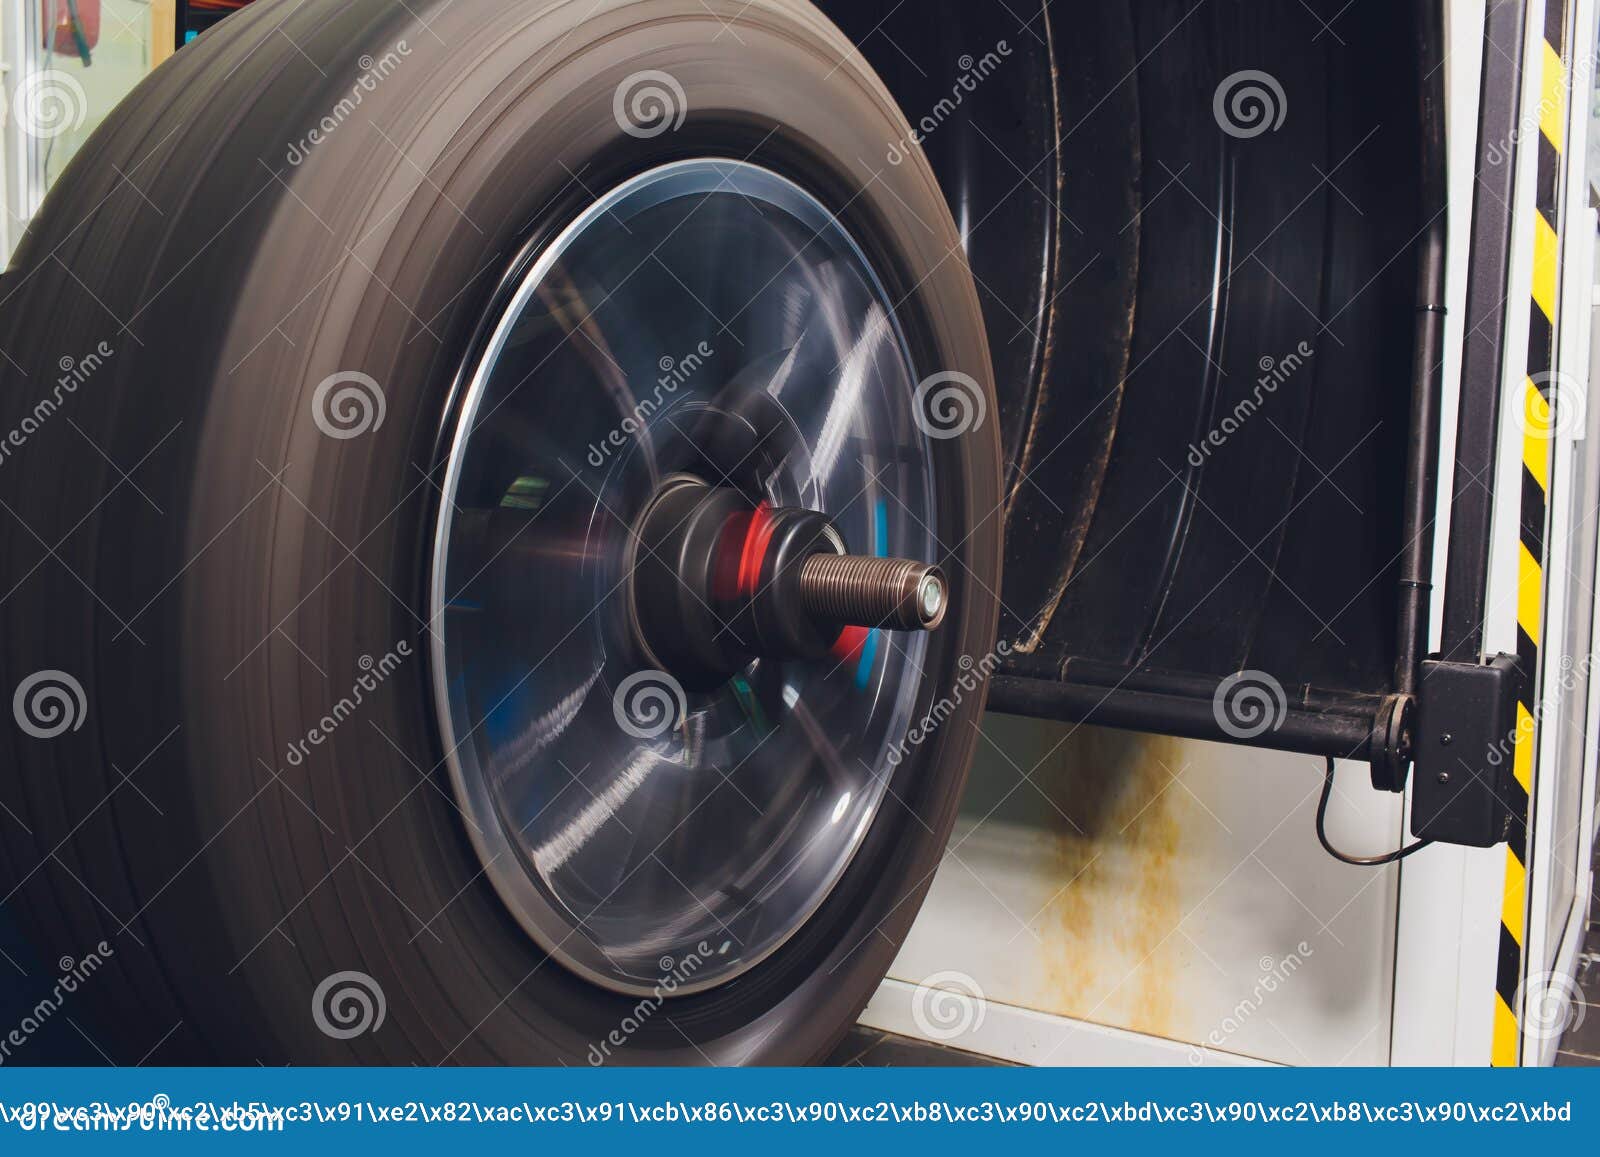 Надо ли балансировать колеса после хранения. Балансировка шин. Балансировка грузовых шин. Динамическая балансировка колес. Балансировочный груз на колесо вездеход.